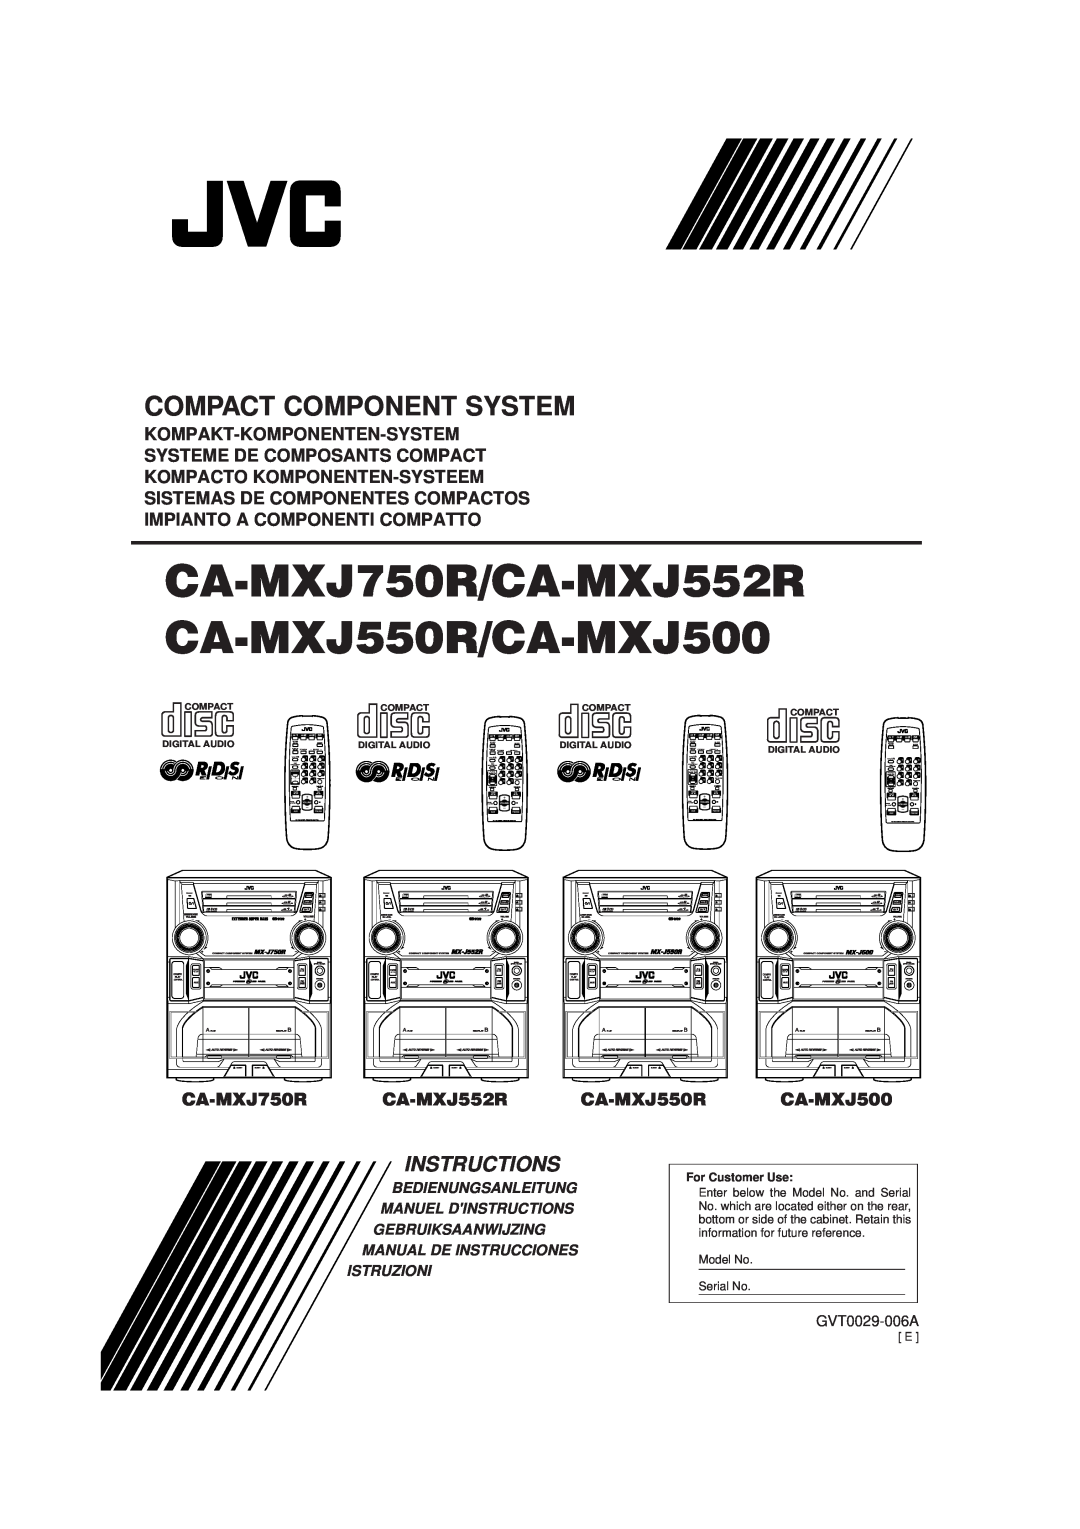 JVC CA-MXJ500 manual Kompakt-Komponenten-System, Systeme De Composants Compact, Kompacto Komponenten-Systeem, CA-MXJ750R 